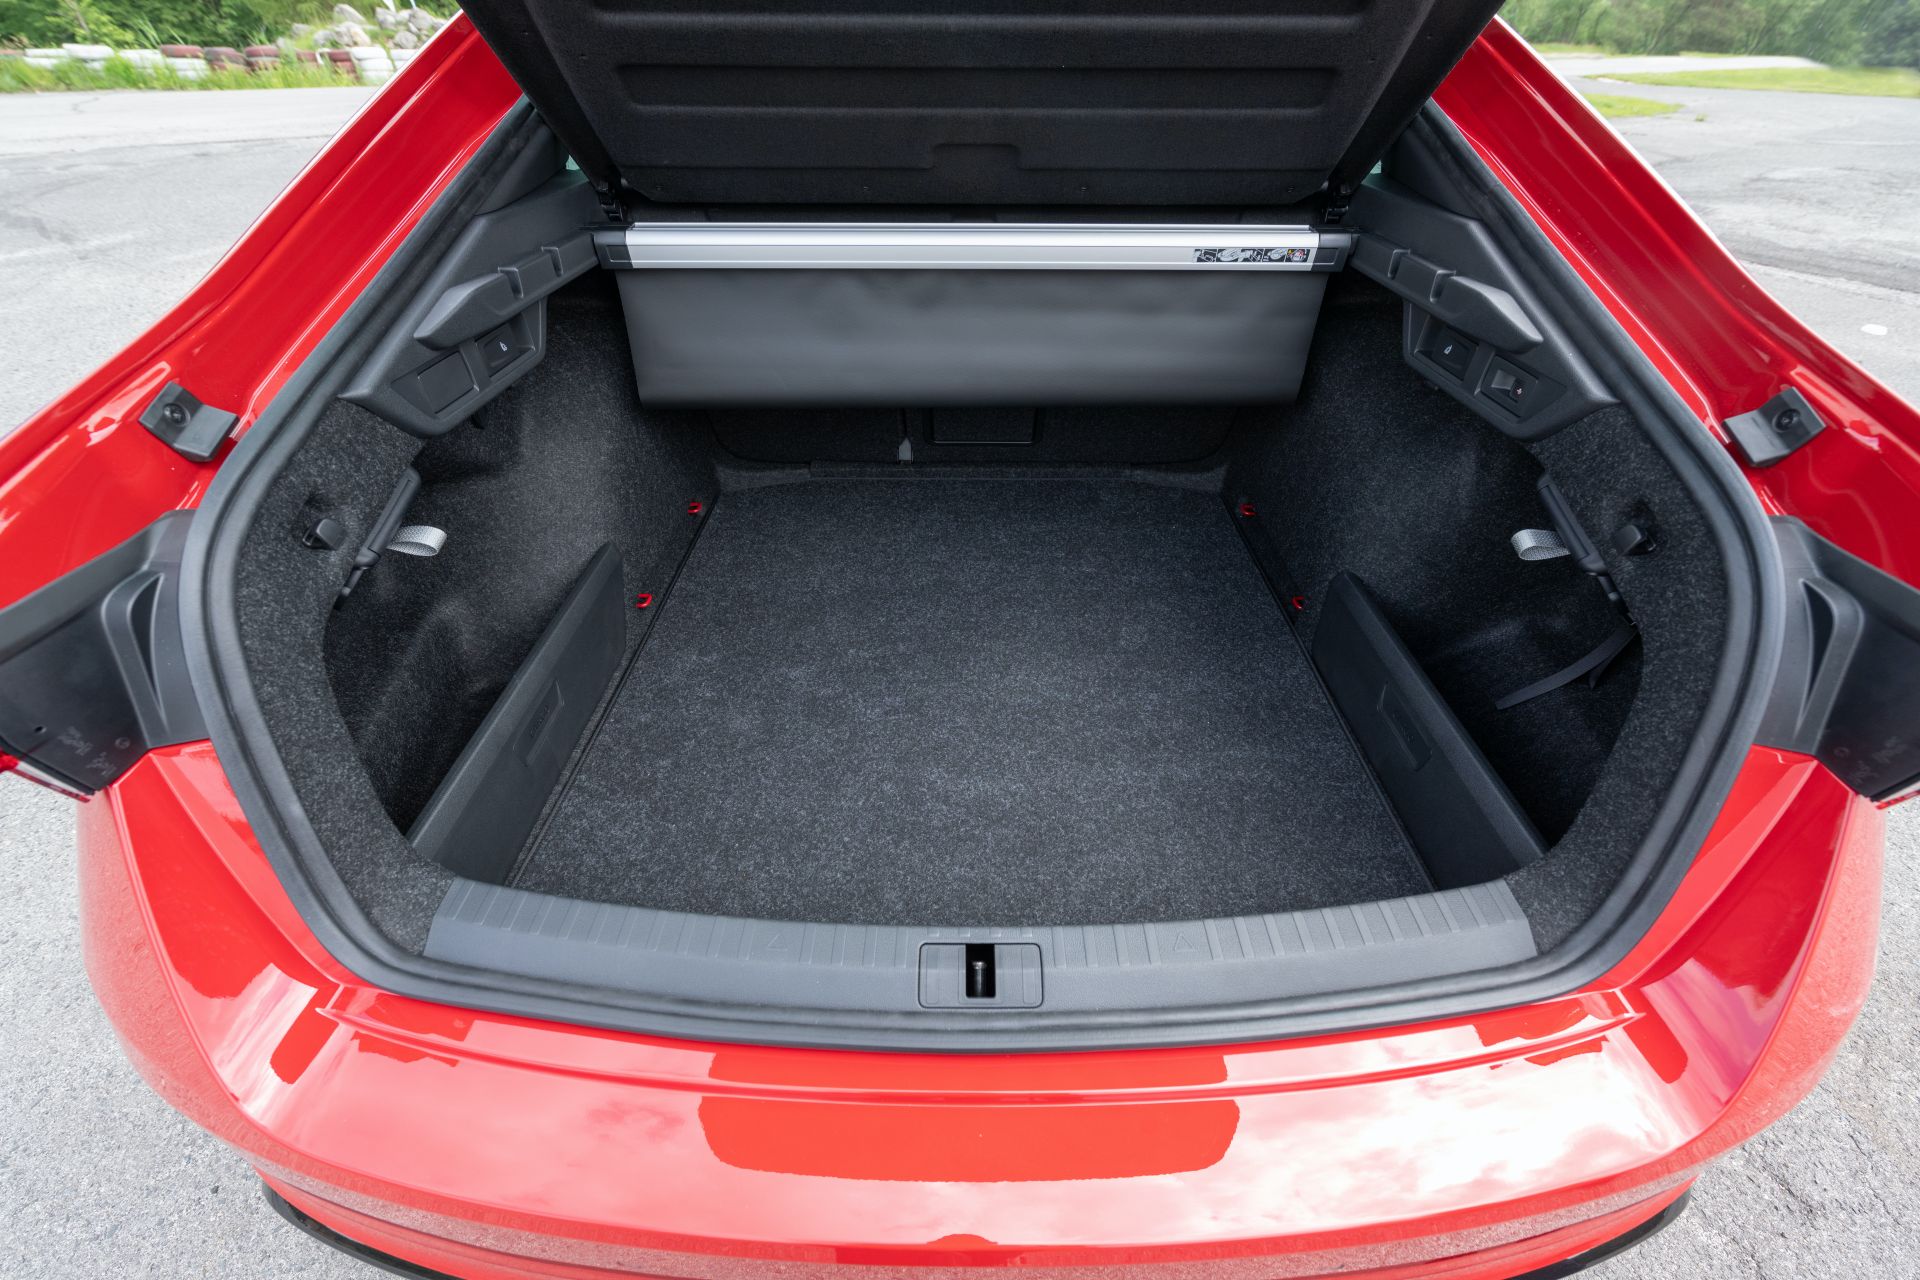 2020 Skoda Octavia RS'in benzinli ve dizel versiyonları tanıtıldı